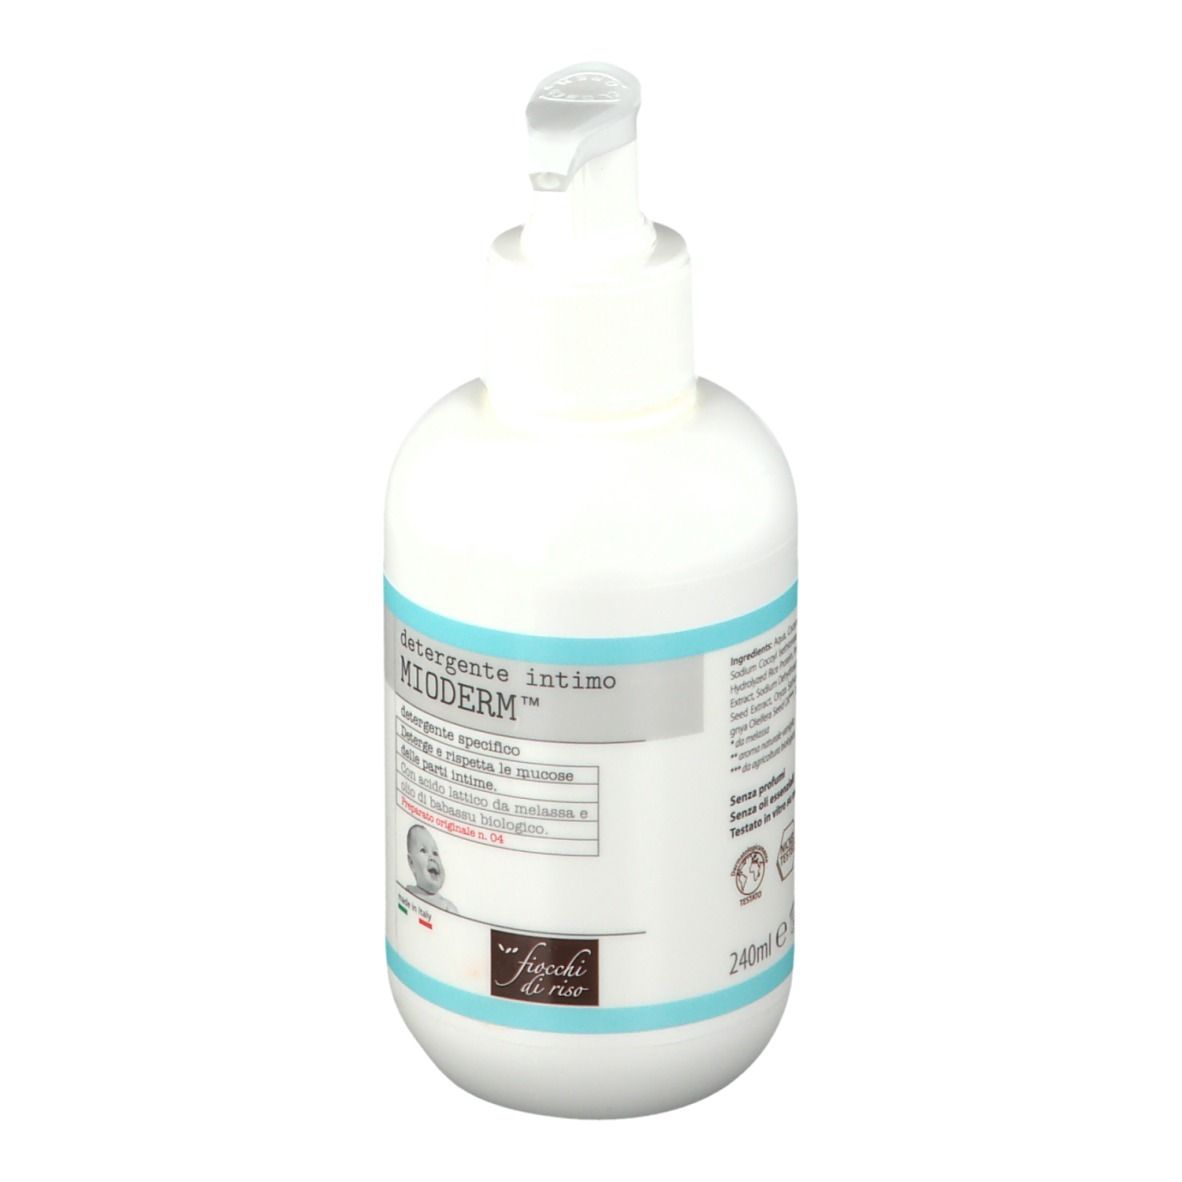 Fiocchi di Riso Detergente Intimo Mioderm™ 240 ml